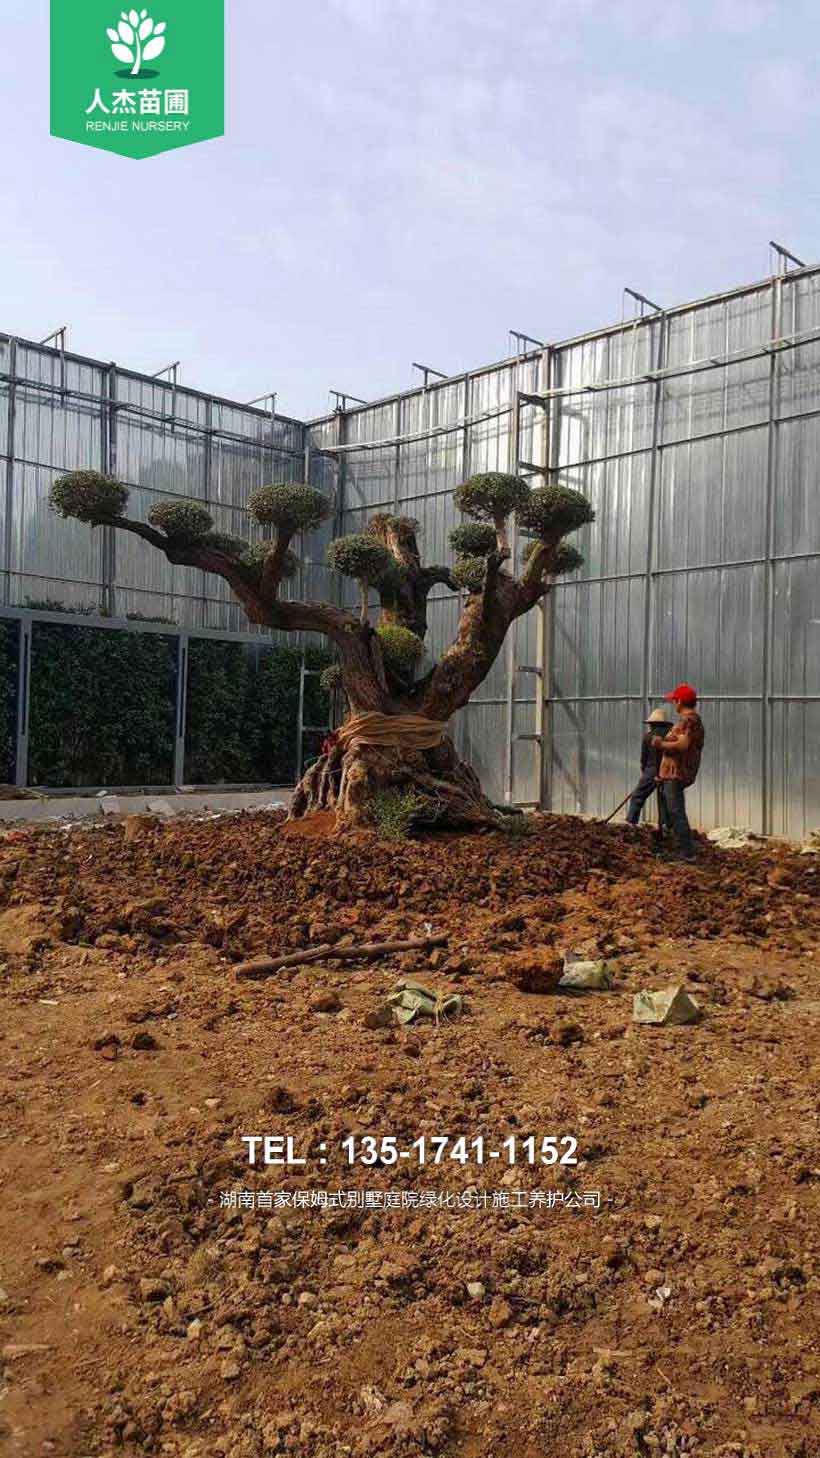 人杰苗圃千年西班牙橄榄树刷新武汉古树最长寿命。